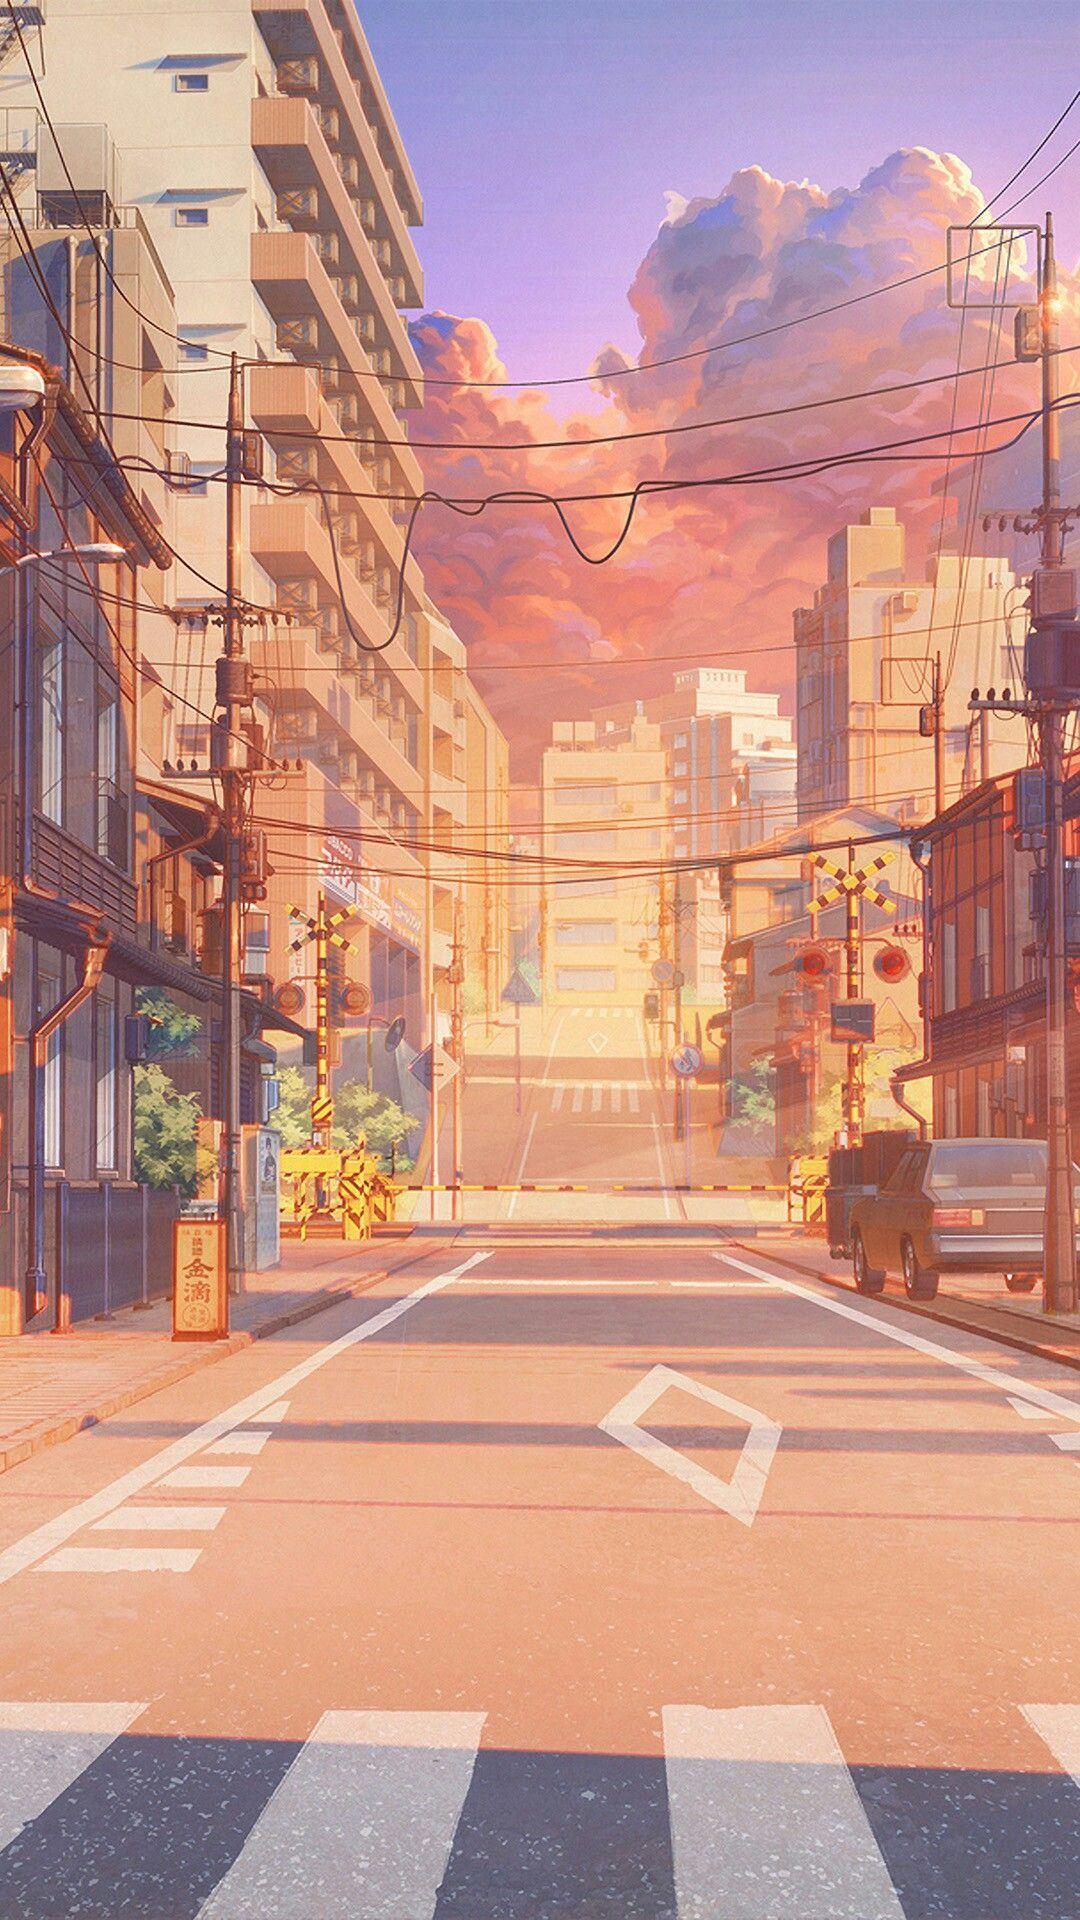 Anime sunset street illustration wallpaper. Scenery wallpaper, Anime scenery, Anime scenery wallpaper